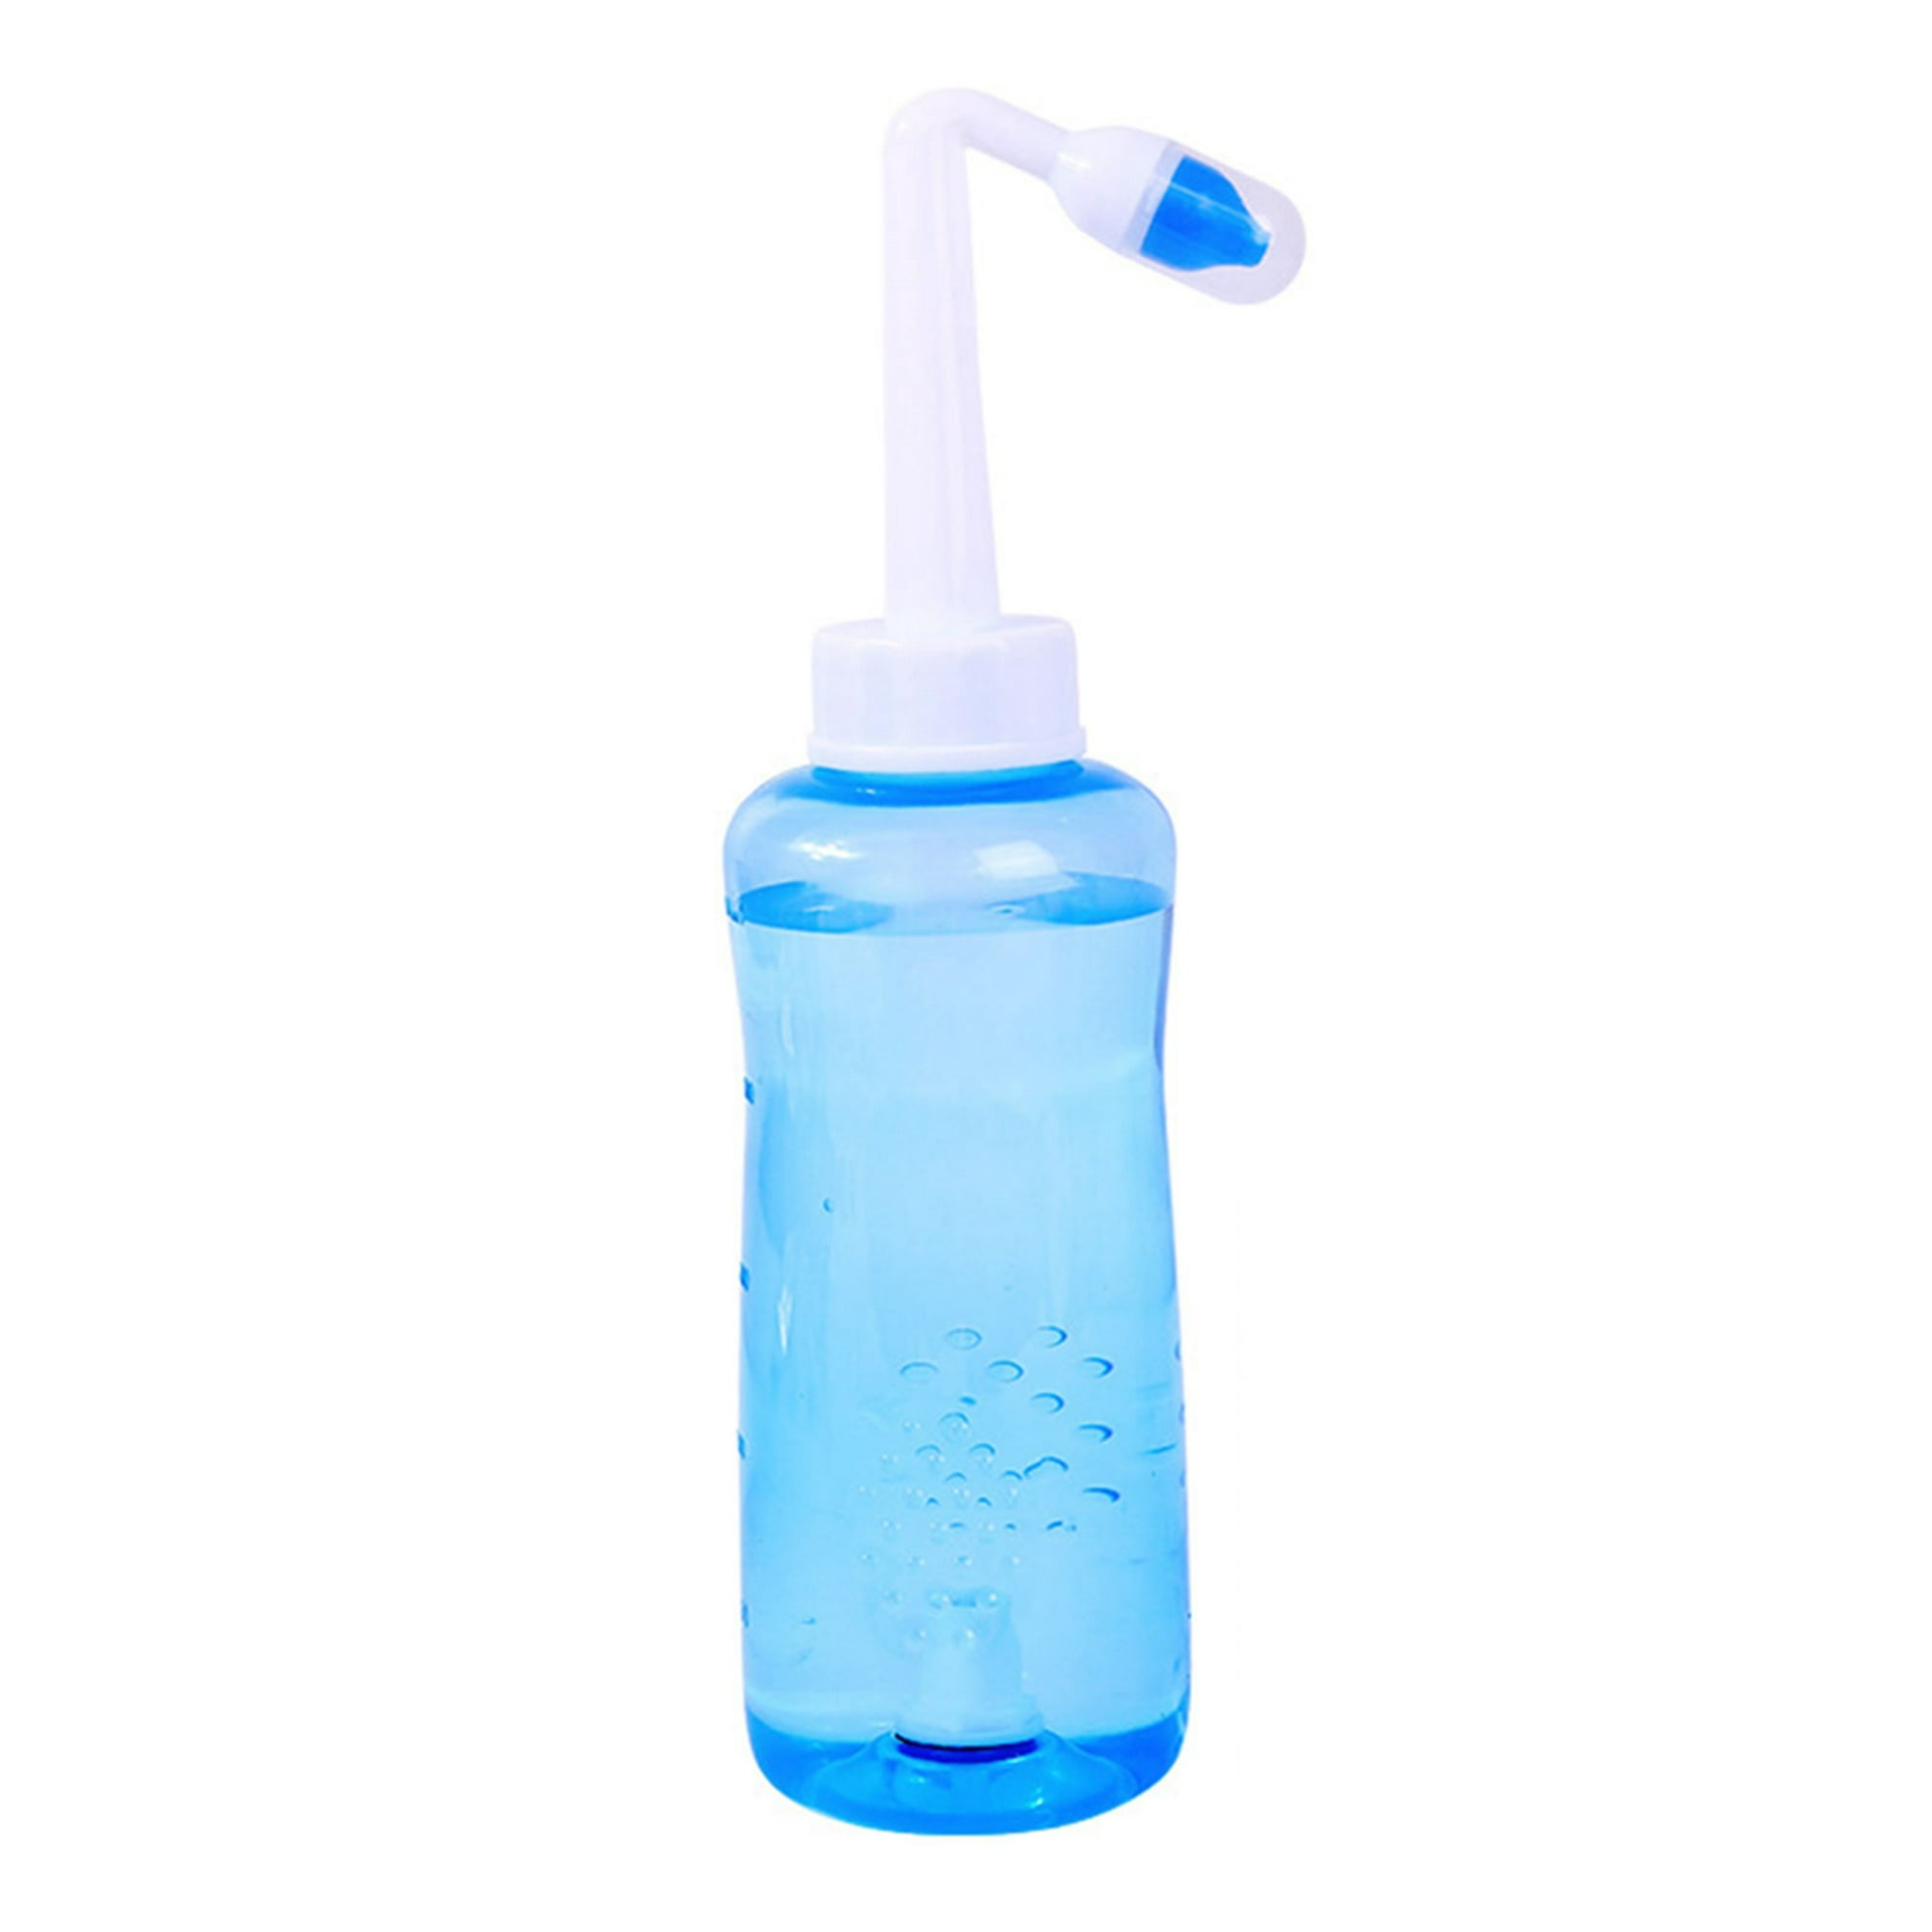  Botella para enjuagues y limpiezas nasales Irrigación nasal con  enjuague a presión para adultos y niños. Sin bisfenol A capacidad para 10.1  onzas líquidas, con 30 paquetes de sal para lavado